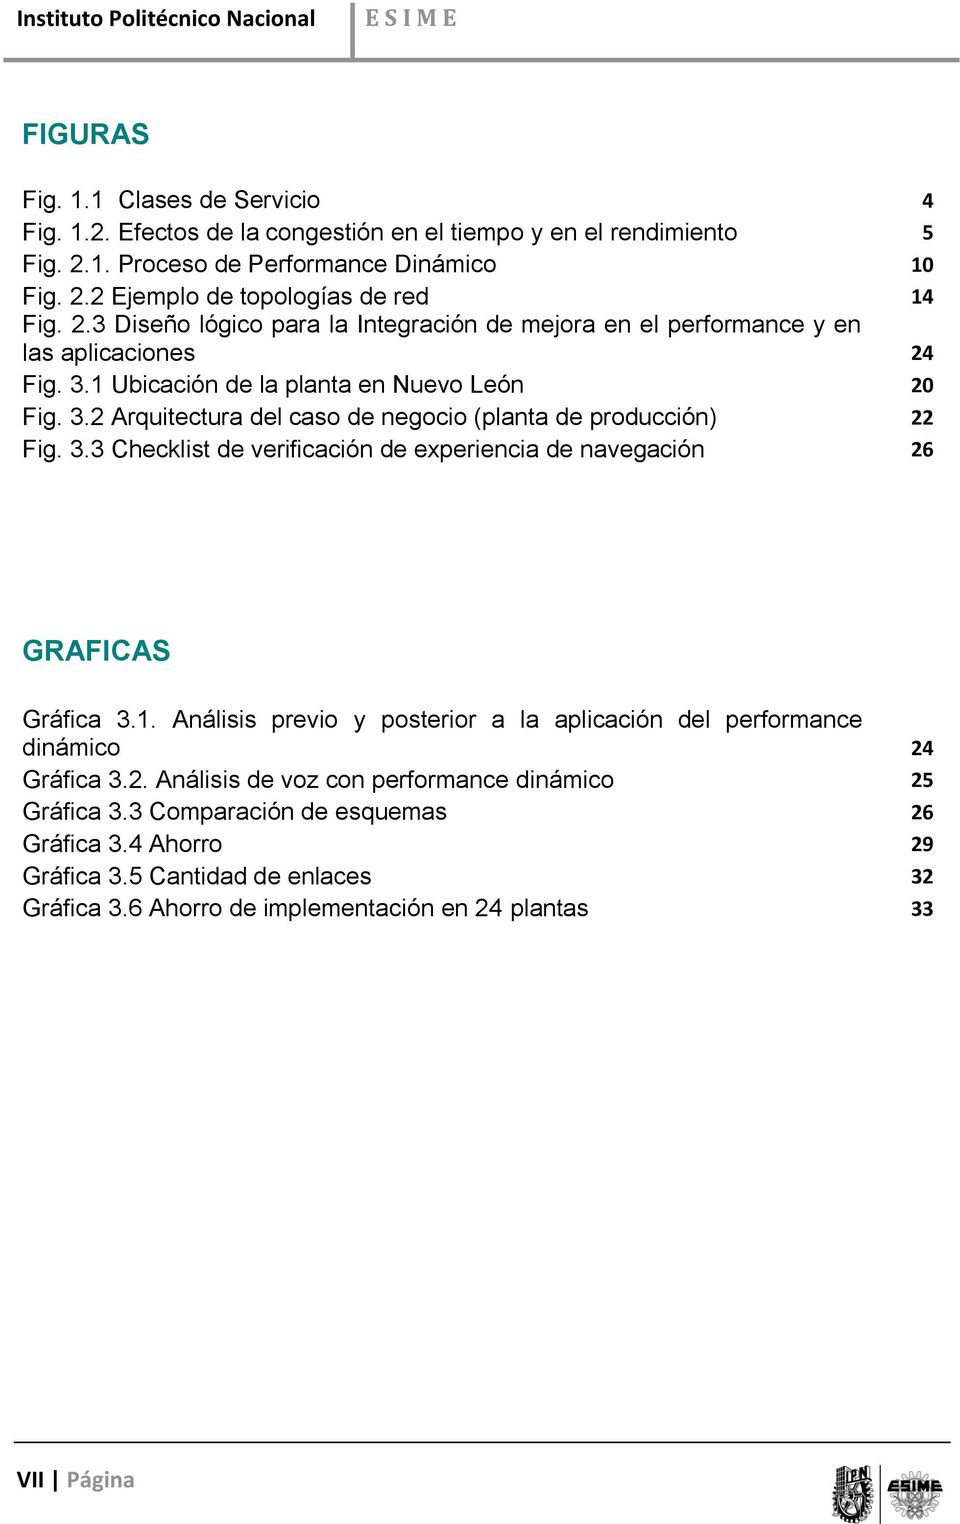 3.3 Checklist de verificación de experiencia de navegación 26 GRAFICAS Gráfica 3.1. Análisis previo y posterior a la aplicación del performance dinámico 24 Gráfica 3.2. Análisis de voz con performance dinámico 25 Gráfica 3.